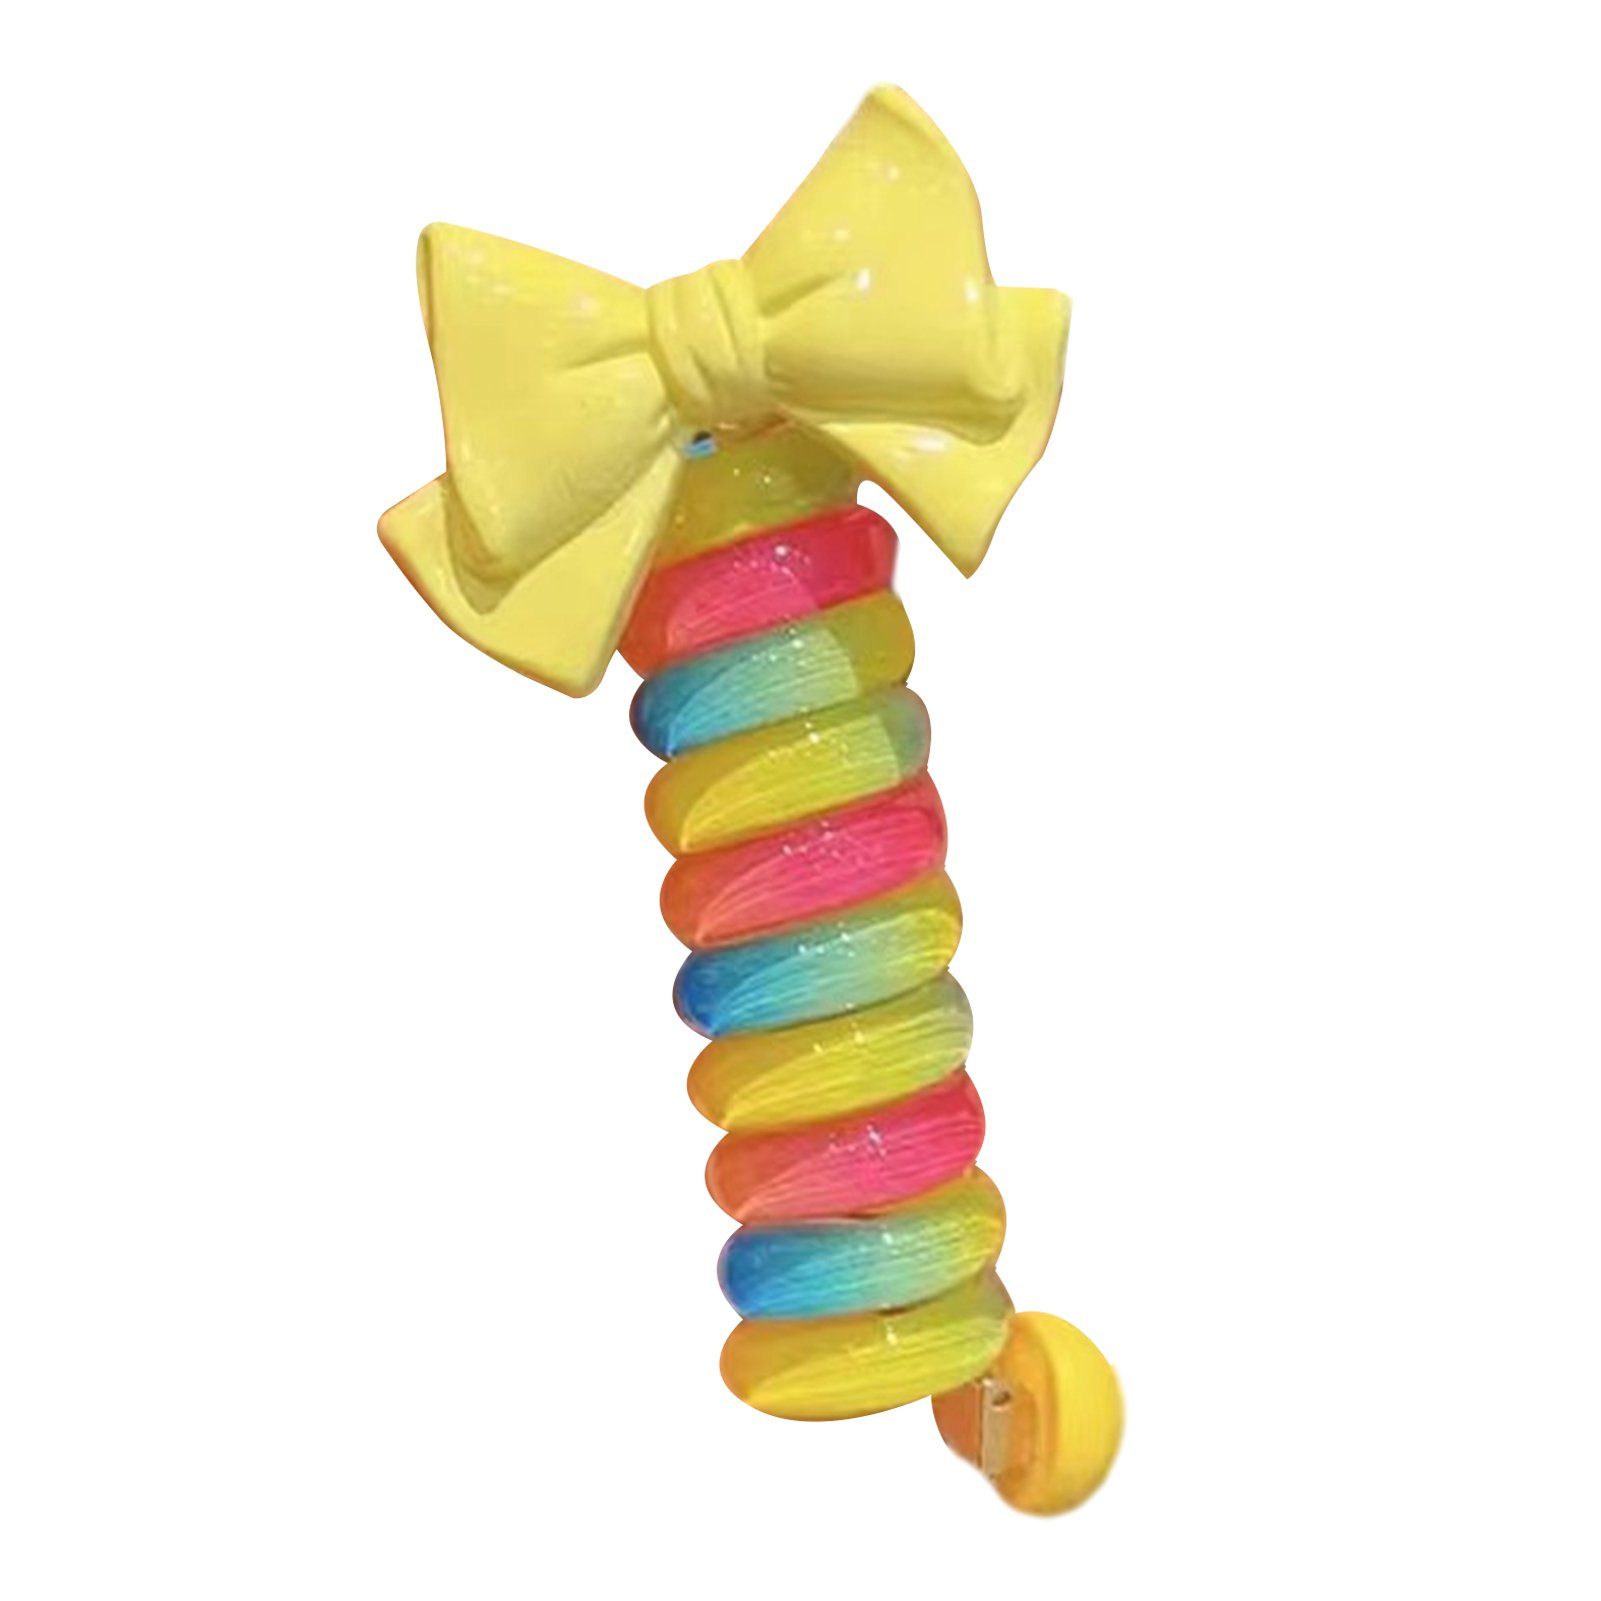 Blusmart Spiral-Haargummi Mädchen Bunte Wiederverwendbare yellow bow Telefonkabel Spiral-Haargummi DIY, Schleife Haarbänder